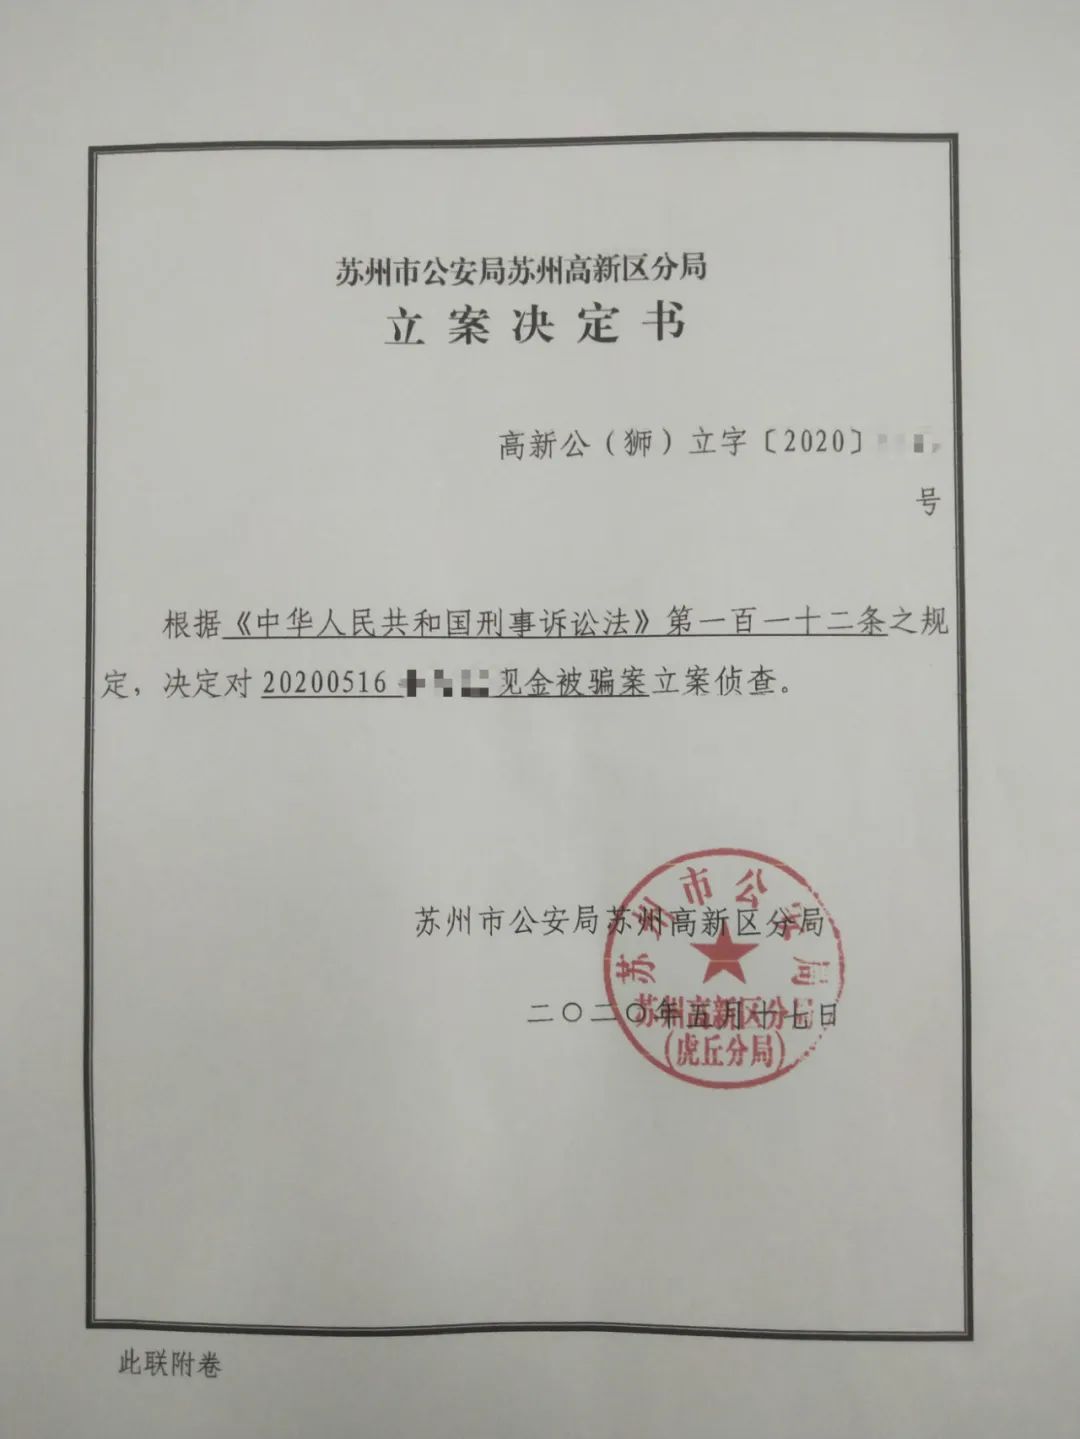 网络刷单骗局多江苏苏州市民被骗近5万公安部门介入调查